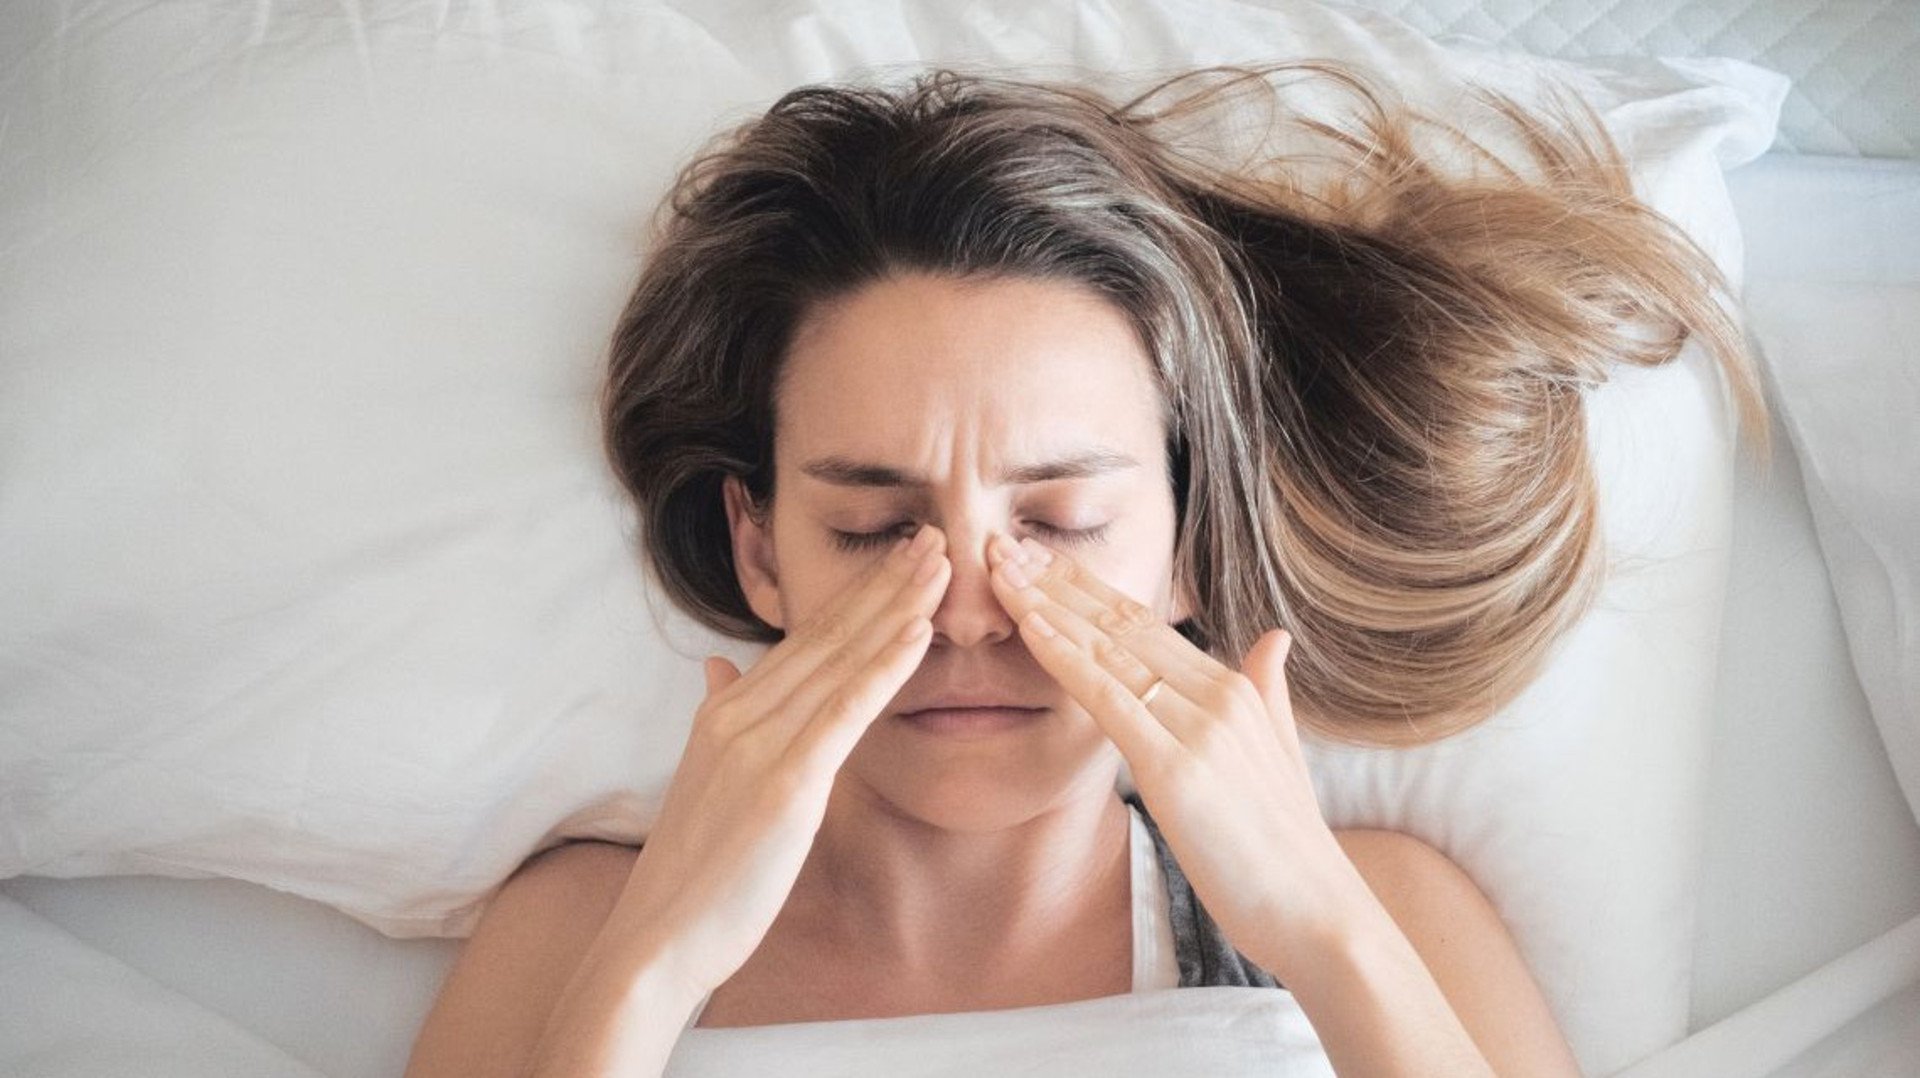 Nasennebenhöhlenentzündungen gehen mit teils schwerwiegenden Symptomen einher